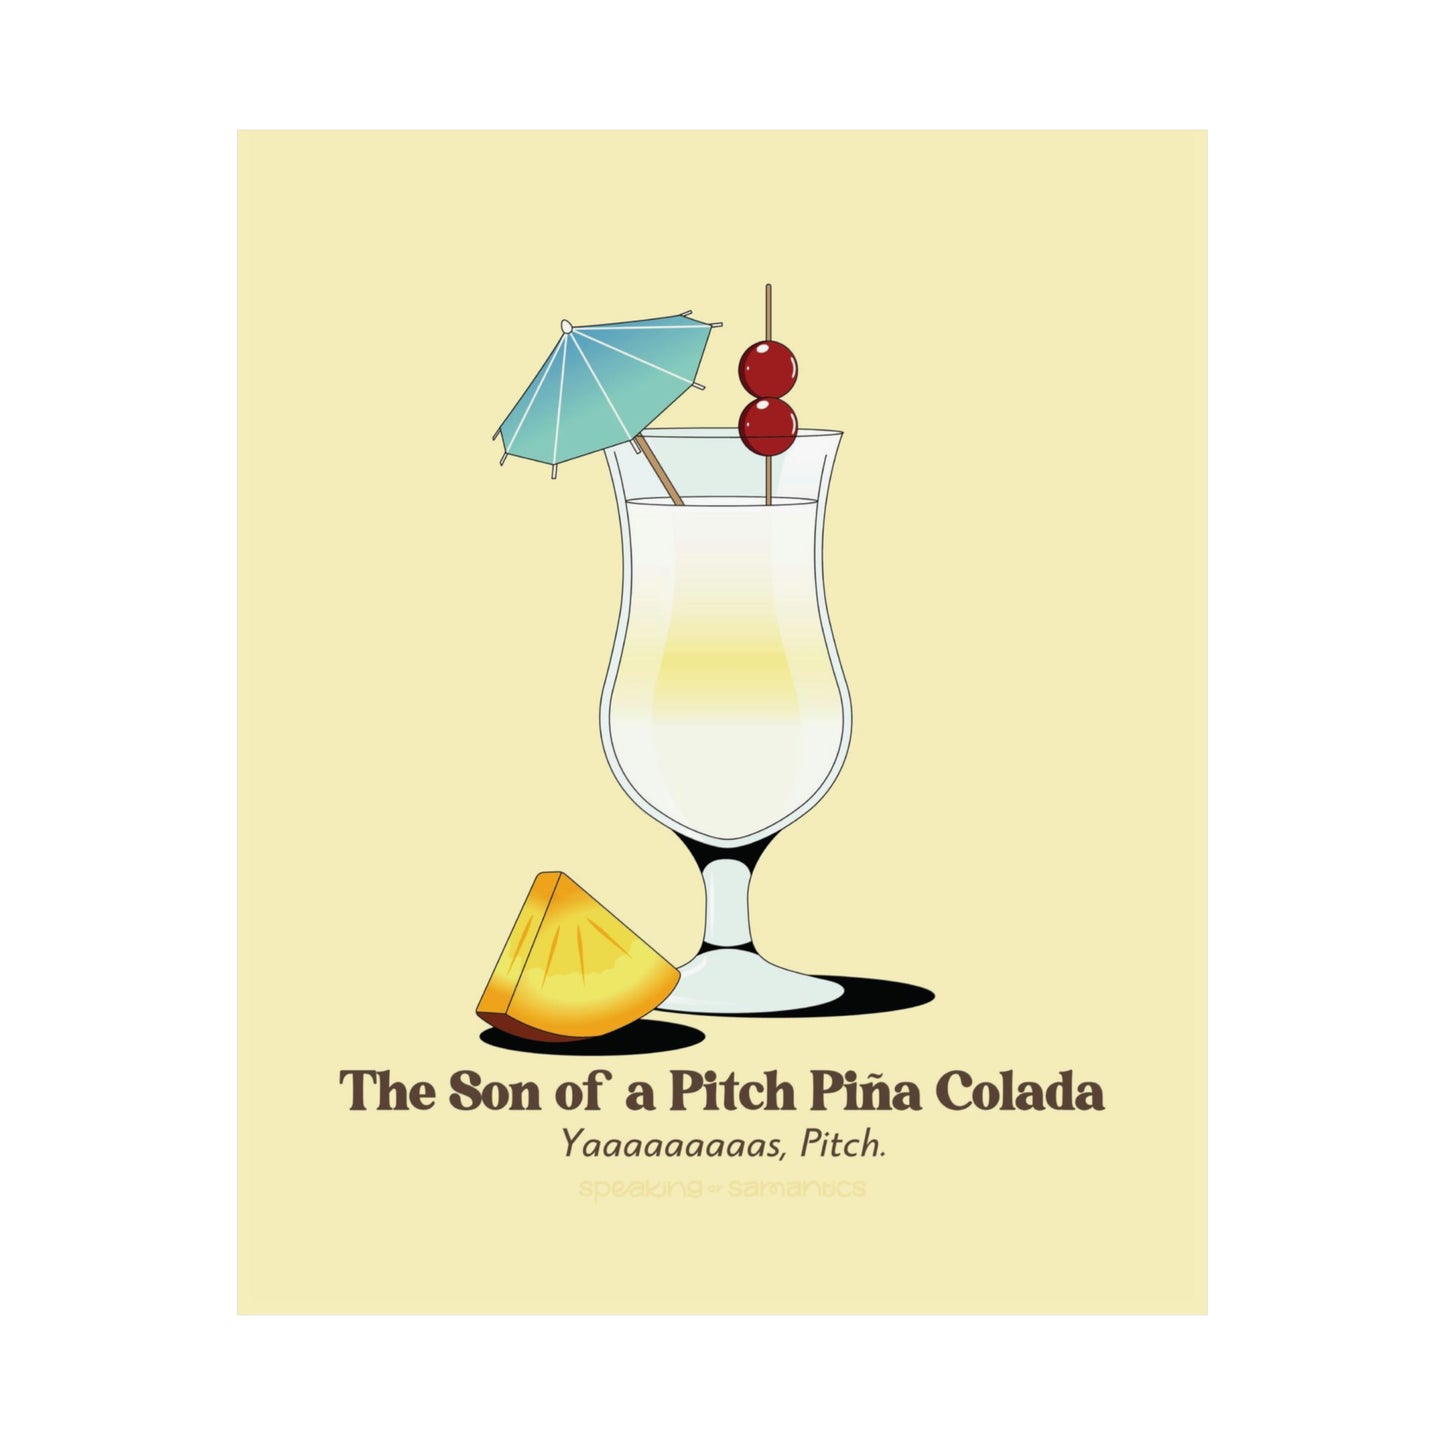 The Son of a Pitch Piña Colada Poster